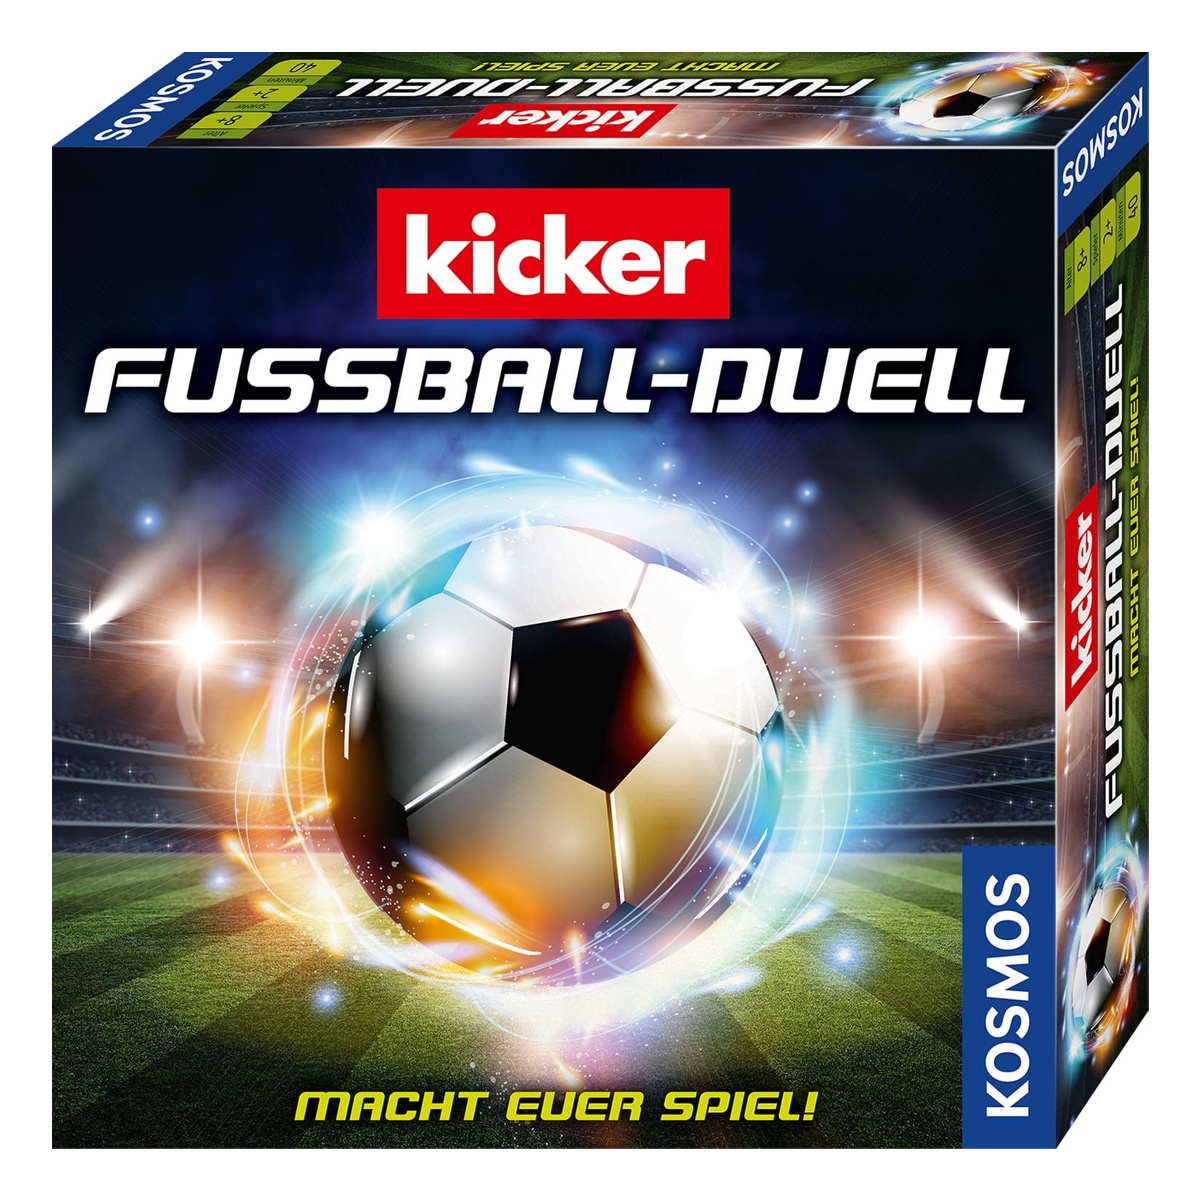 Kicker Fußball-Duell Spiel vonb Kosmos